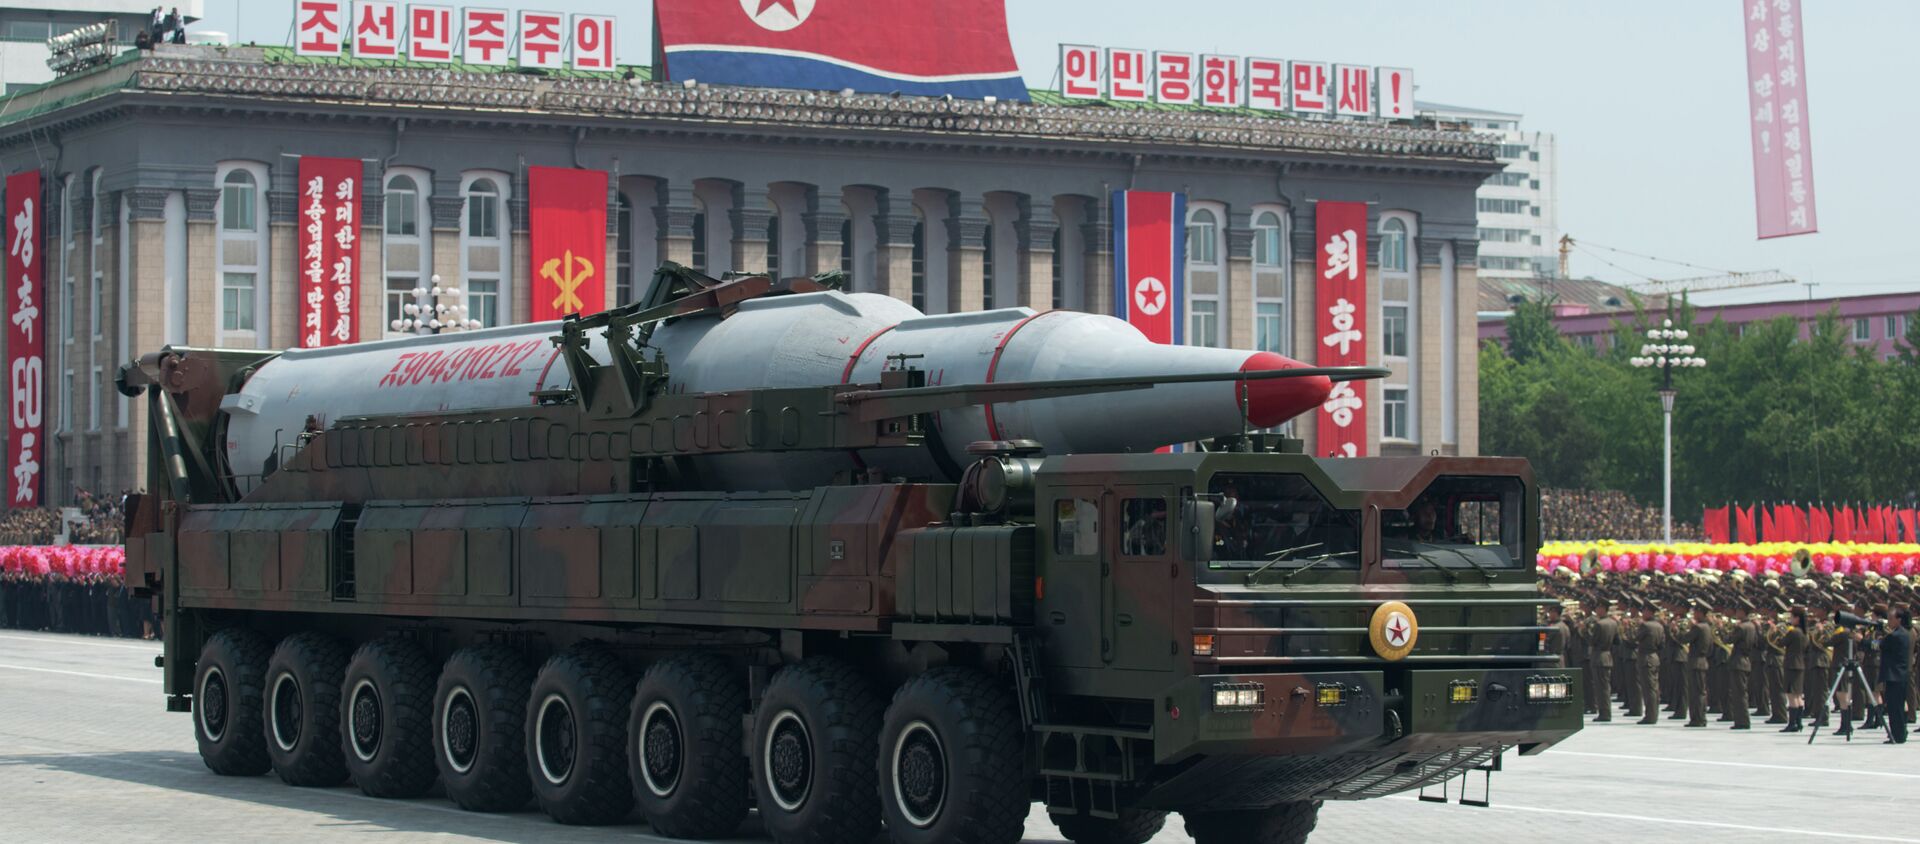 Постоји могућност да Северна Кореја већ поседује 20 нуклеарних бојевих глава и има капацитет да удвостручи свој арсенал до наредне године, сматрају кинески стручњаци за нуклеарно оружје. - Sputnik Србија, 1920, 02.03.2021